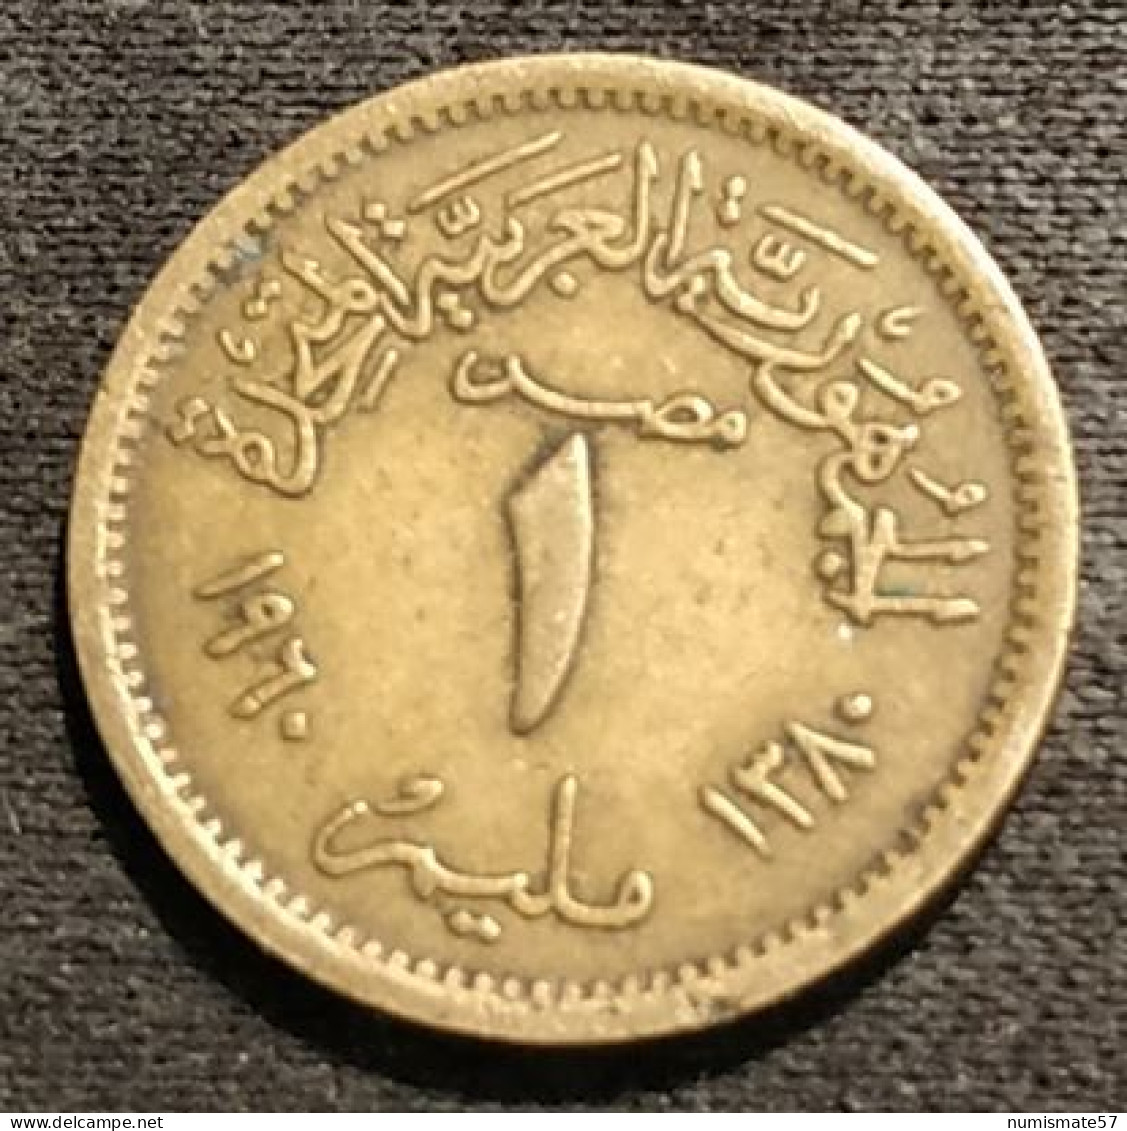 Pas Courant - EGYPTE - EGYPT - 1 MILLIEME 1960 ( 1380 ) - KM 393 - Aegypten